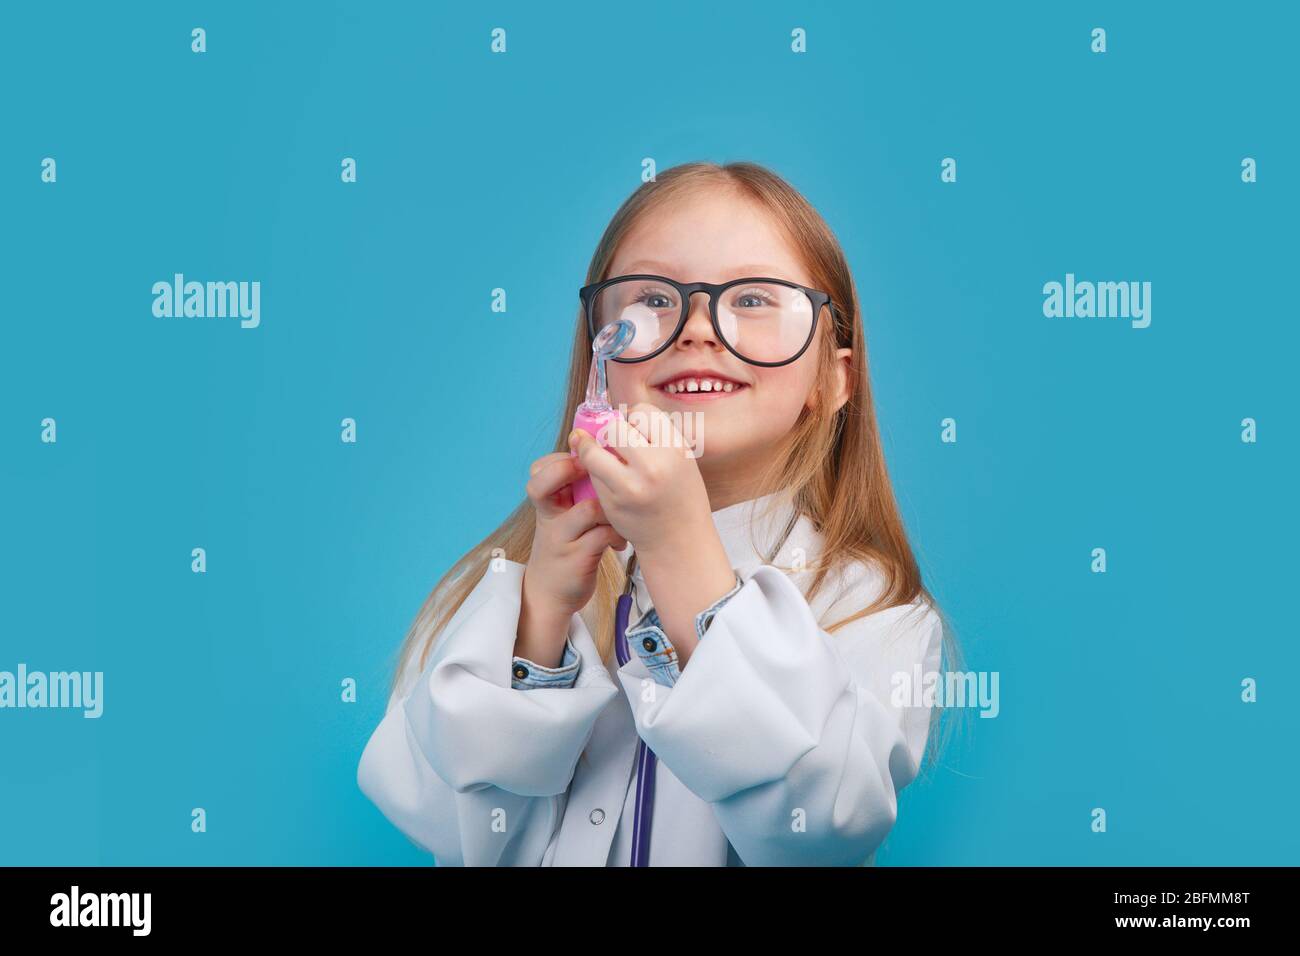 Niña sonriente con uniforme médico y gafas jugando con estetoscopio Foto de stock